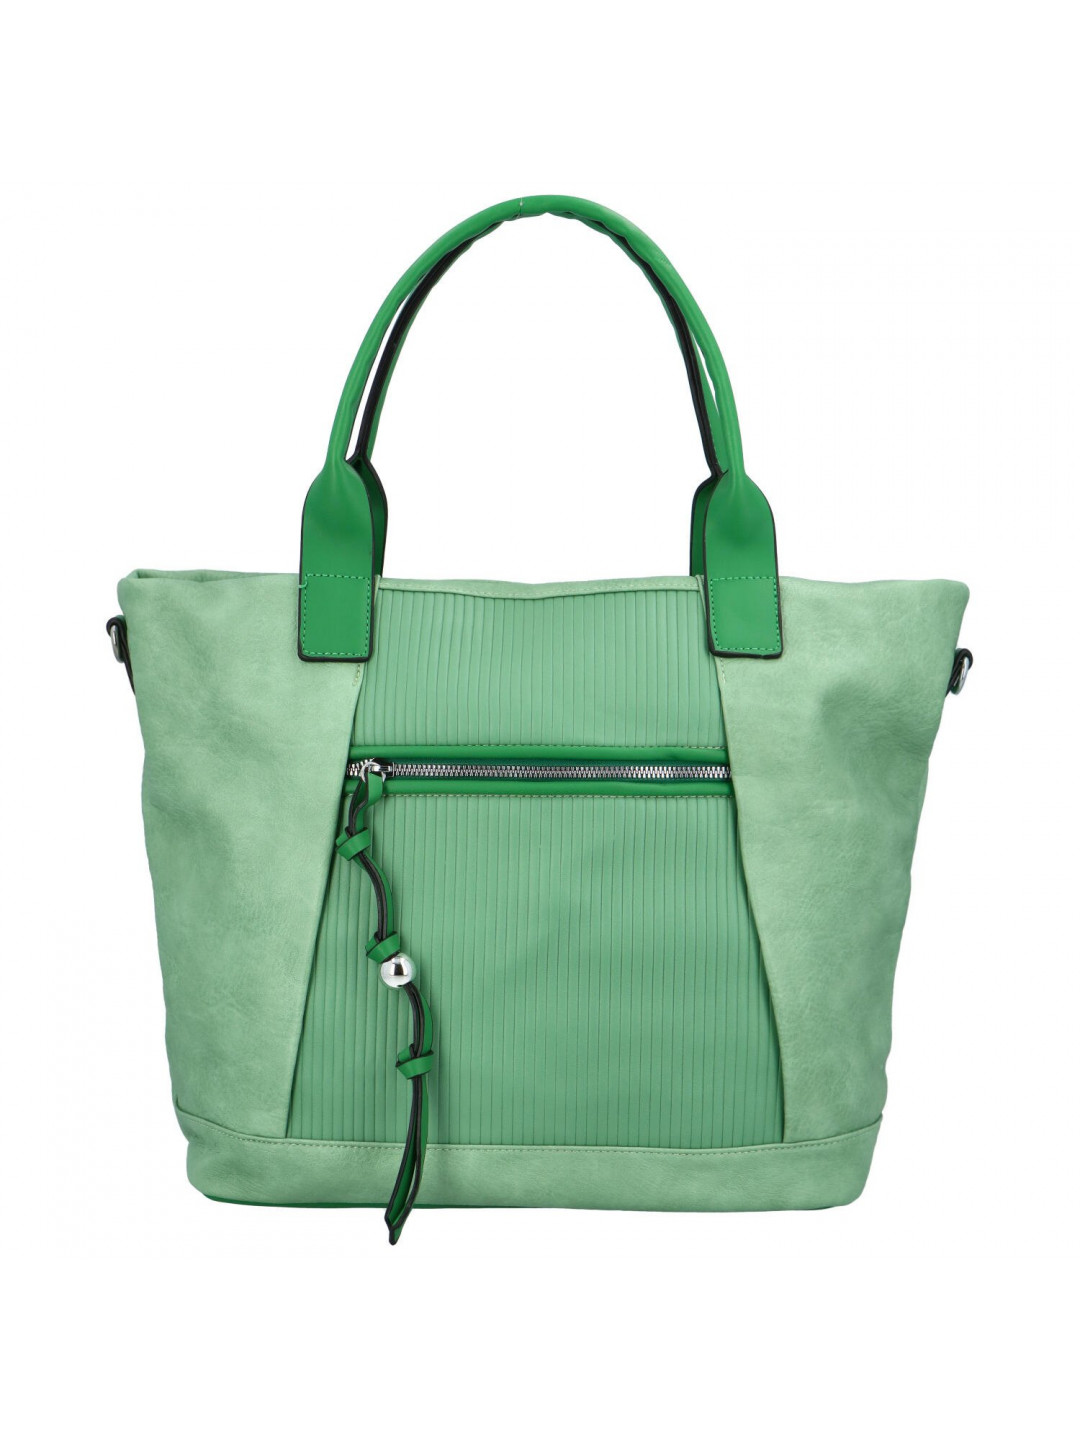 Koženková dámská kabelka se svislými proužky Nancy zelená